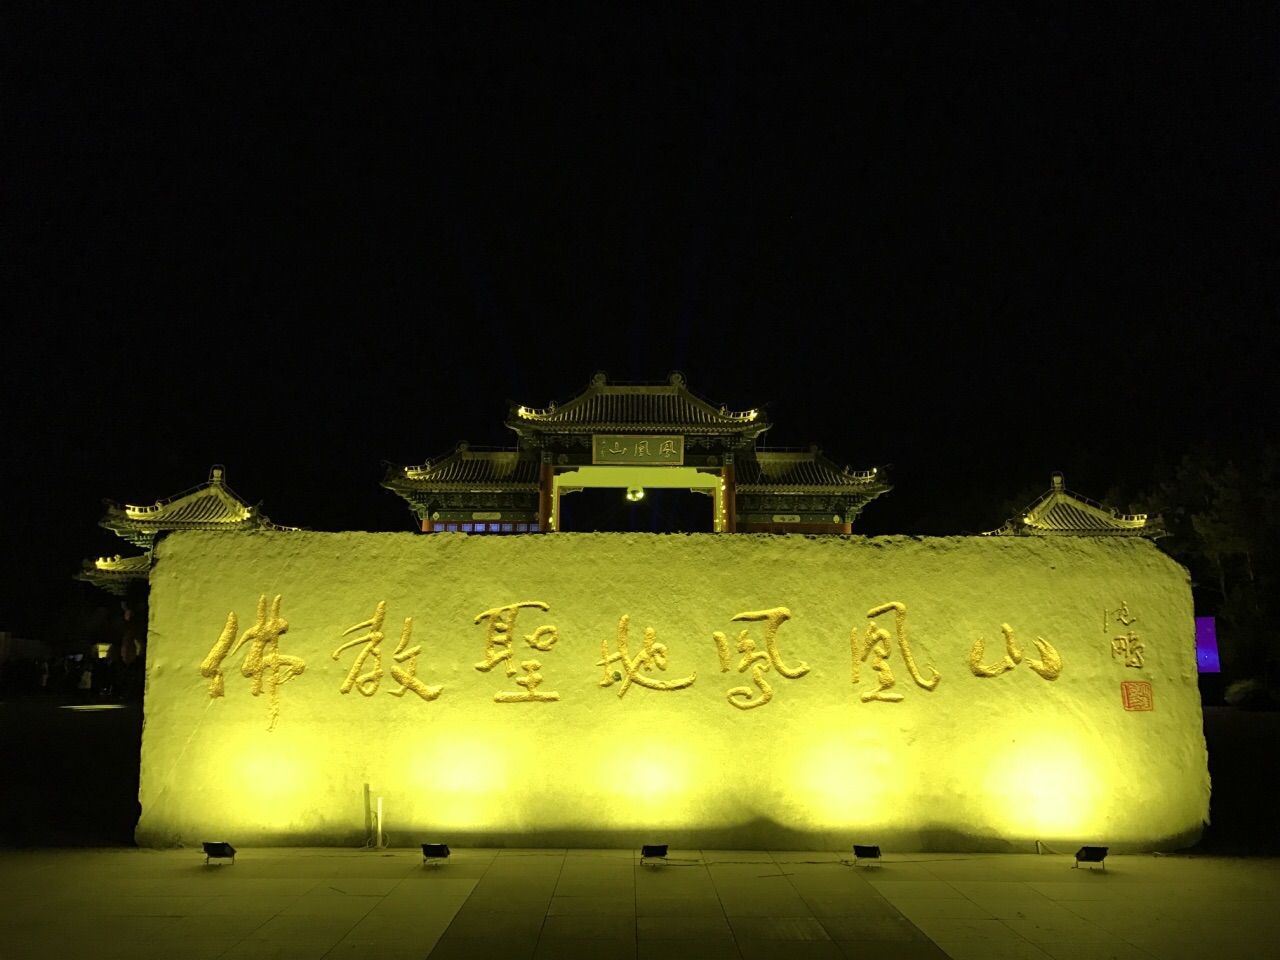 深圳凤凰山夜景图片